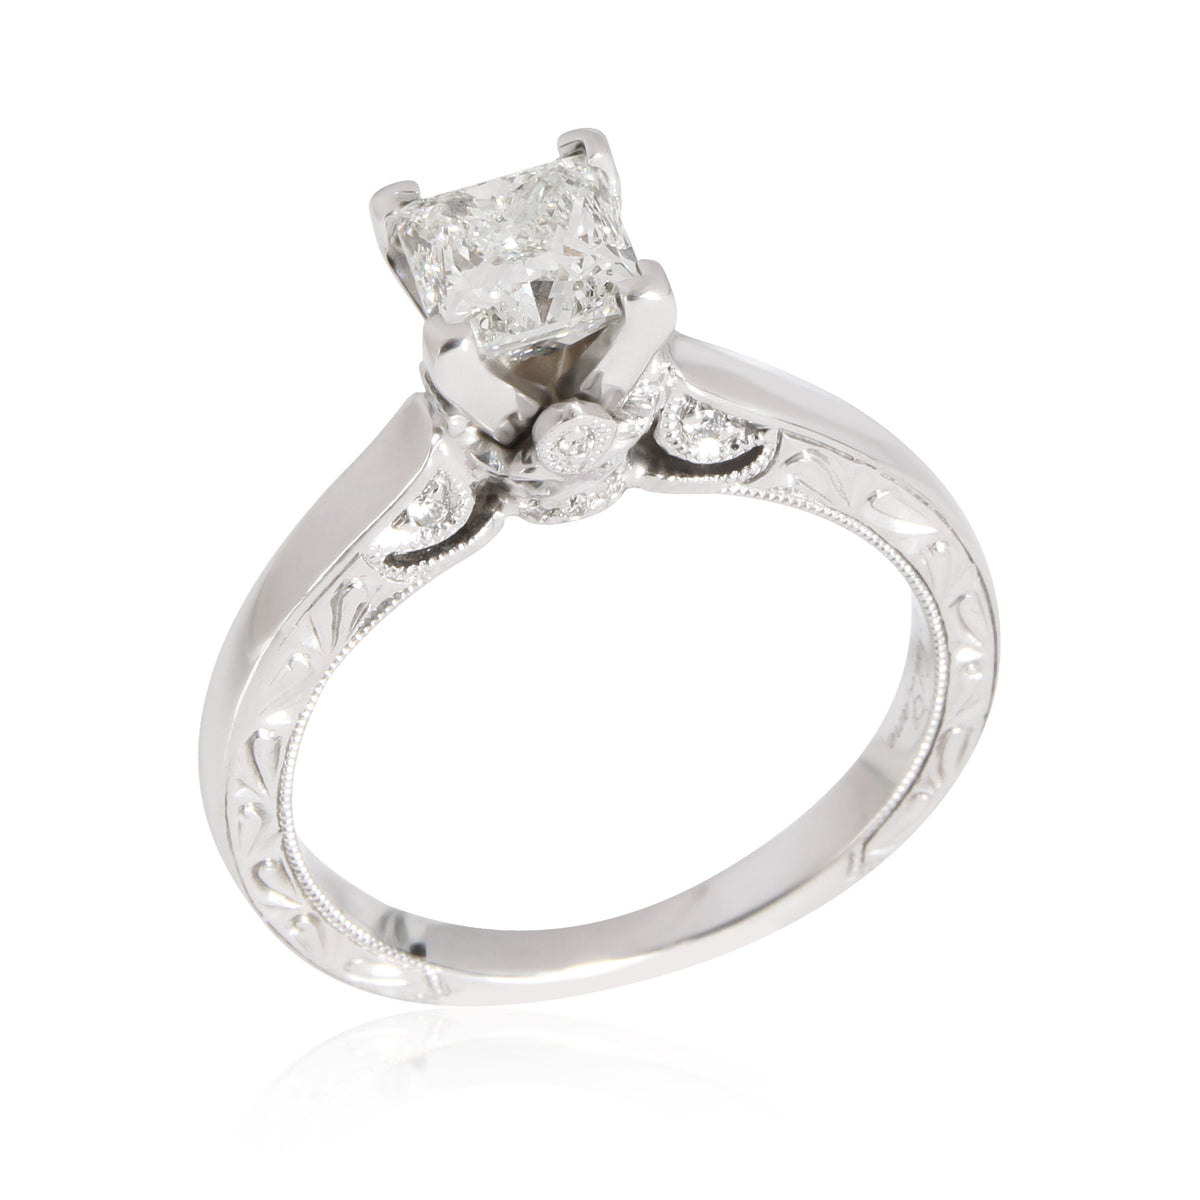 Neil Lane Diamond Engagement Ring in 14K White Gold I SI1 1.06 CTW